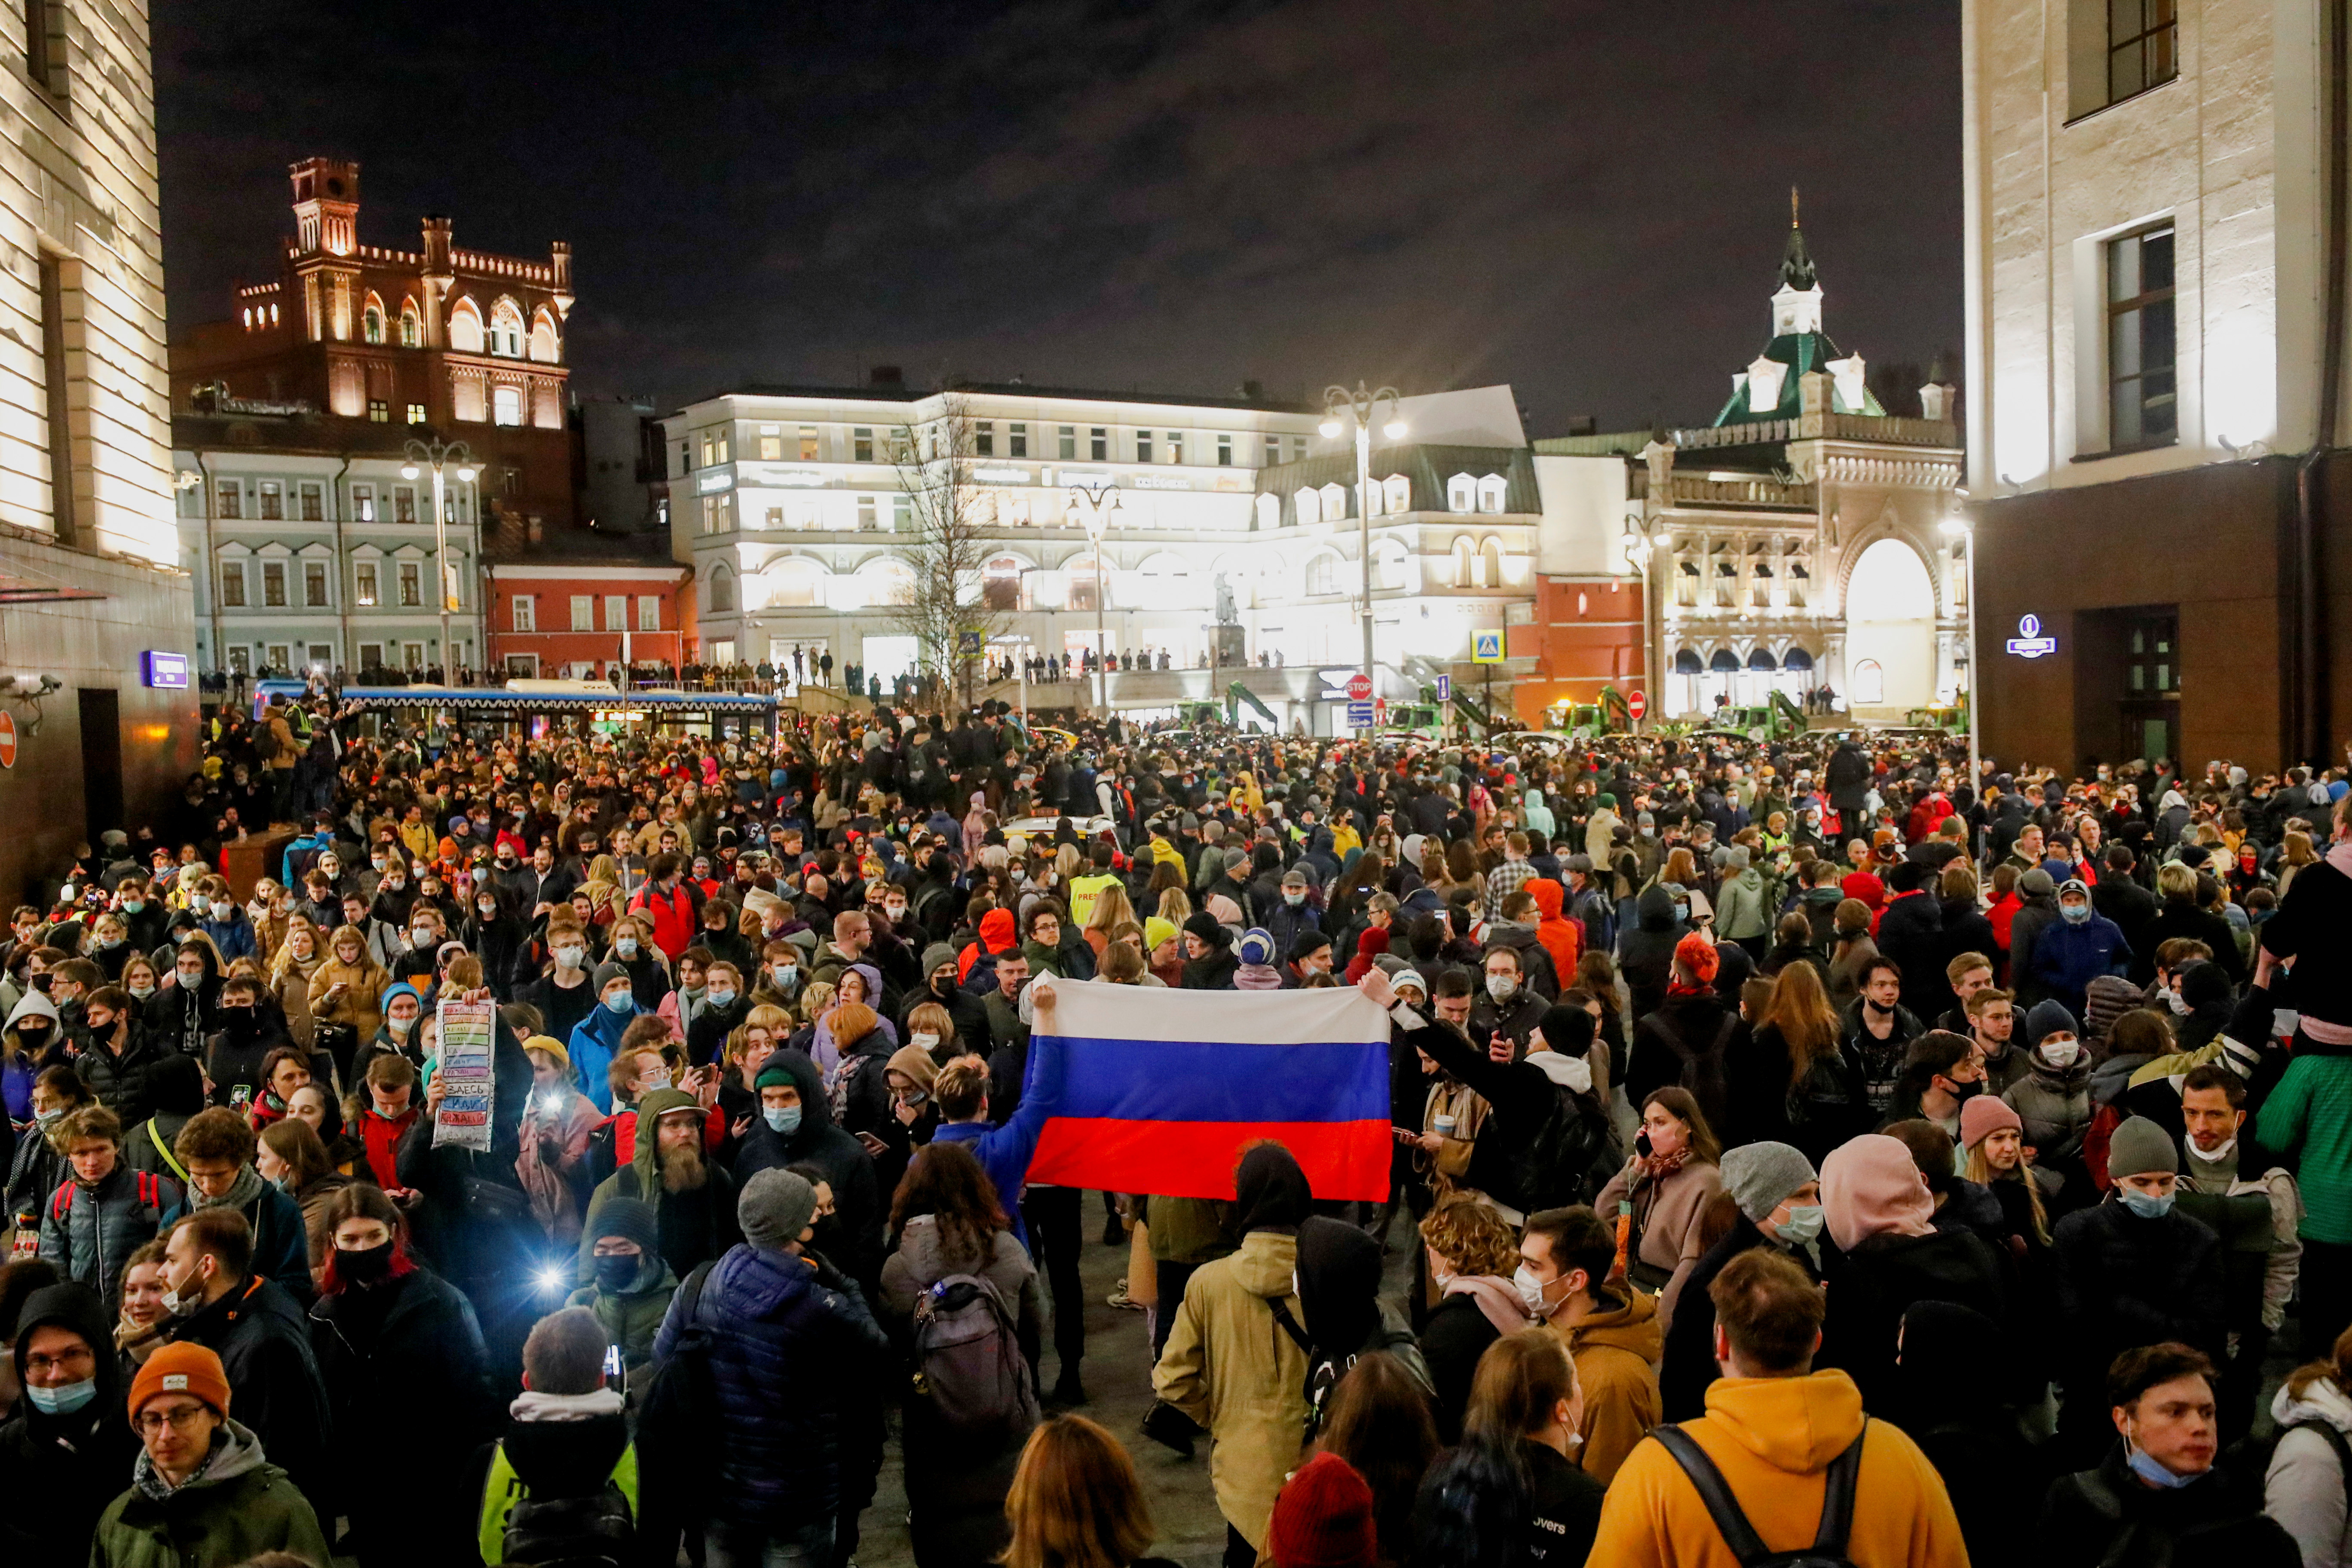 Partidarios del político opositor ruso encarcelado Alexei Navalny sostienen una bandera rusa durante un mitin en Moscú, Rusia, el 21 de abril de 2021. REUTERS / Shamil Zhumatov